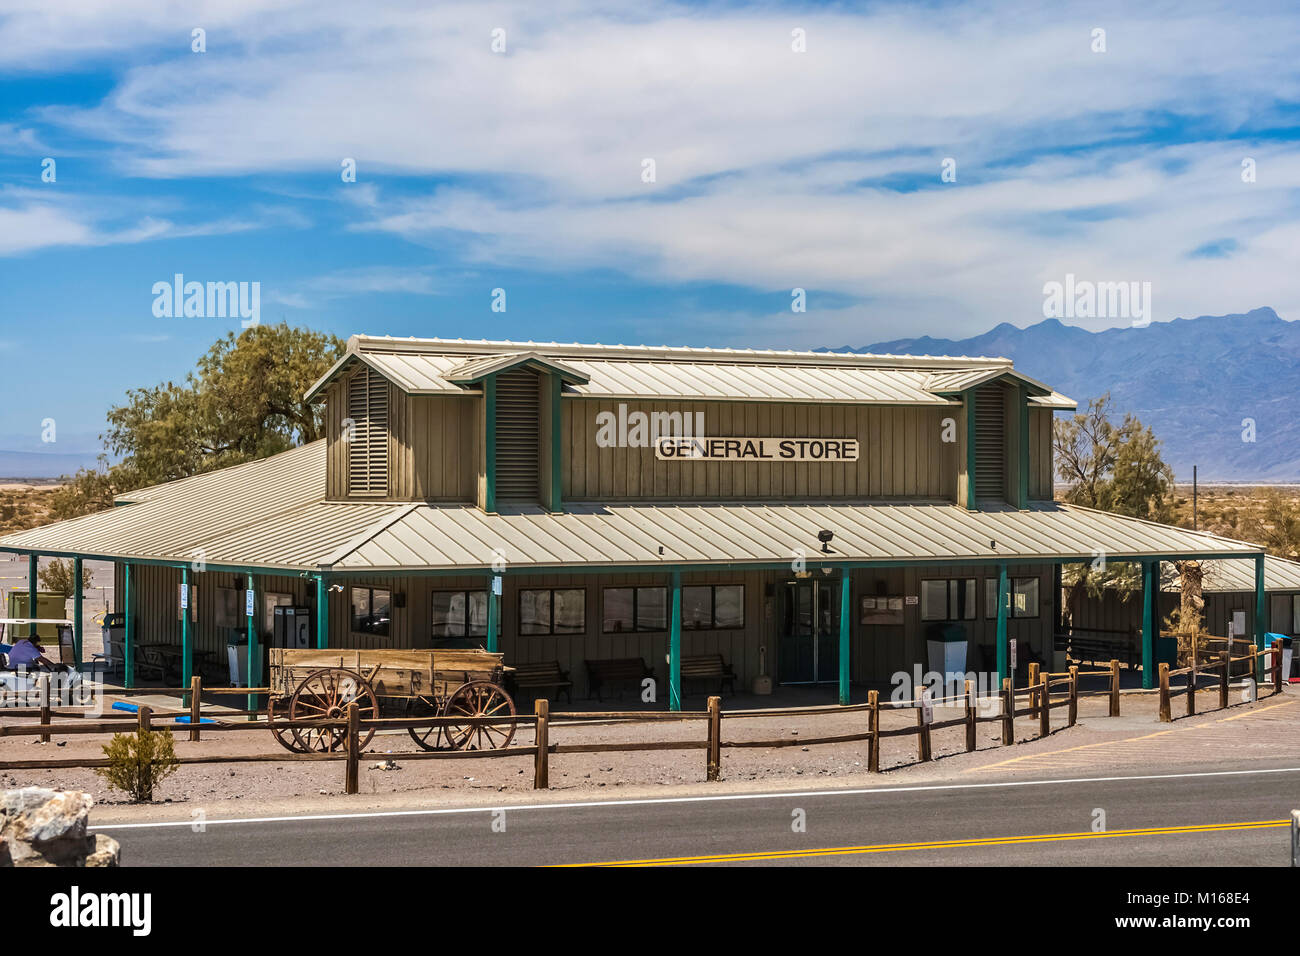 STOVEPIPE WELLS, CALIFORNIE - Le 12 juillet 2007 : Le magasin général de Stovepipe Wells situé dans la région de Death Valley National Park, en Californie. Banque D'Images